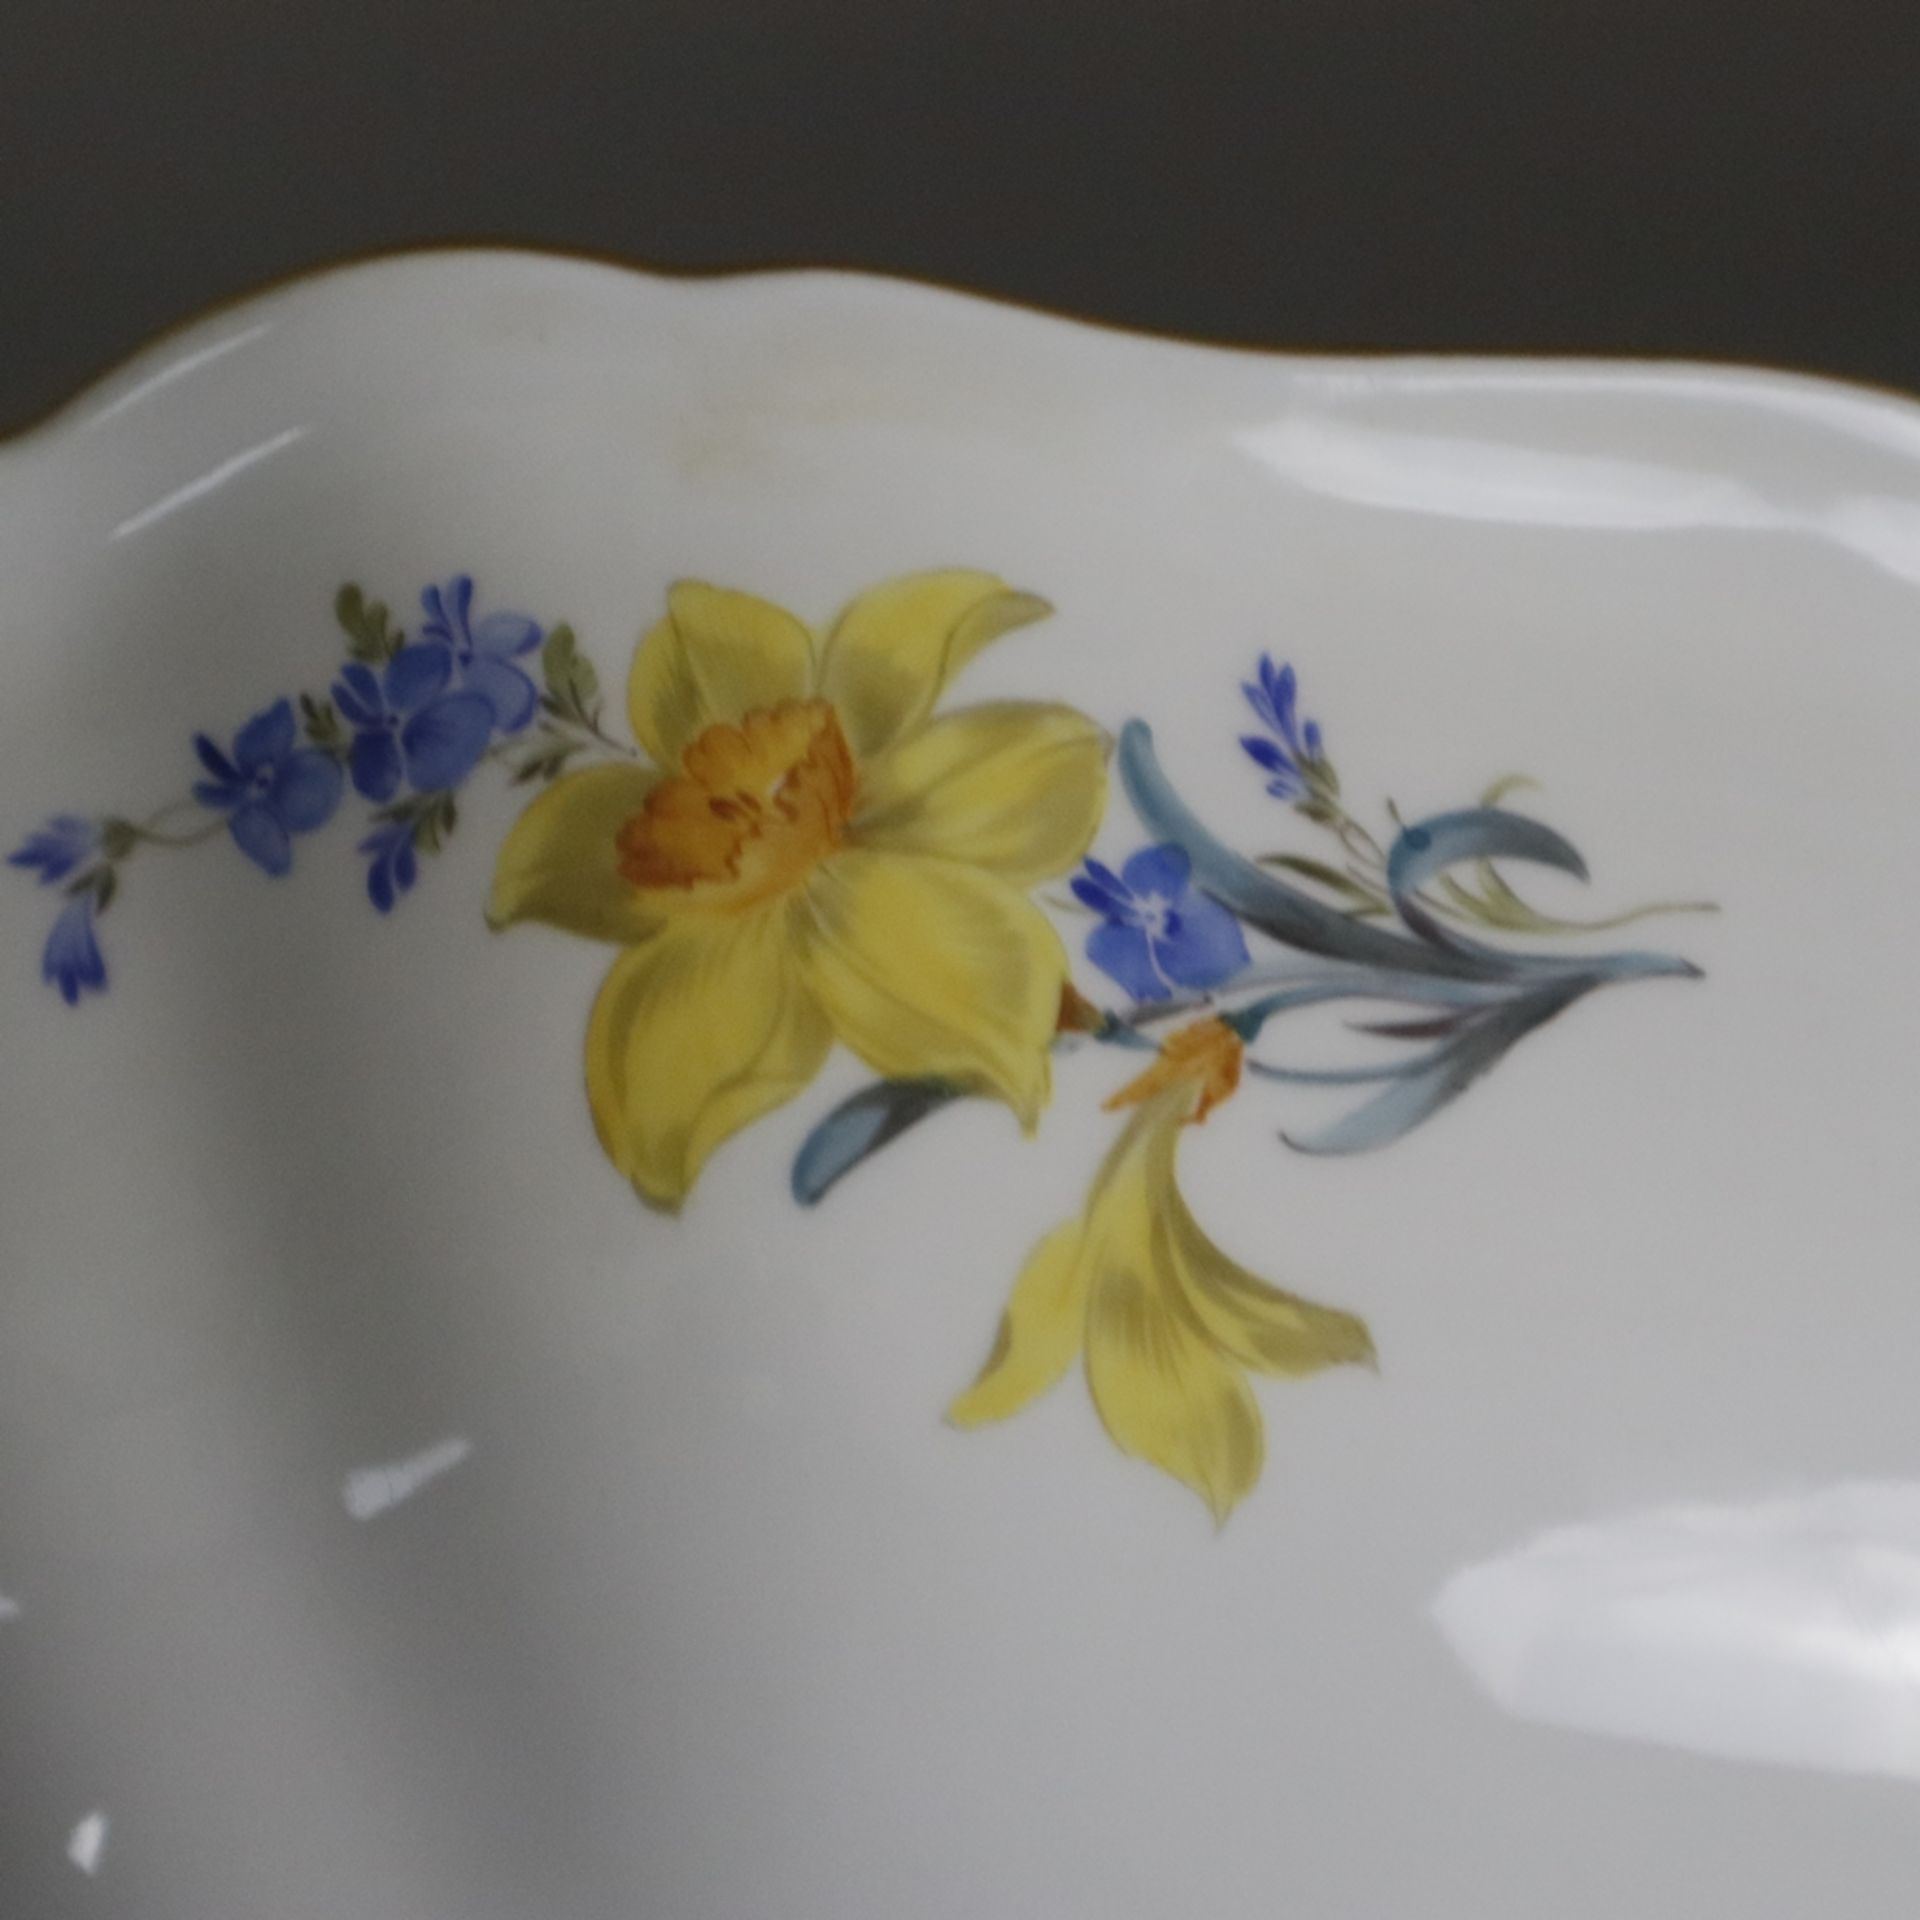 Salatschüssel - Meissen, Porzellan, Form "Neuer Ausschnitt", innen und außen polychrome Blumenmaler - Image 8 of 9